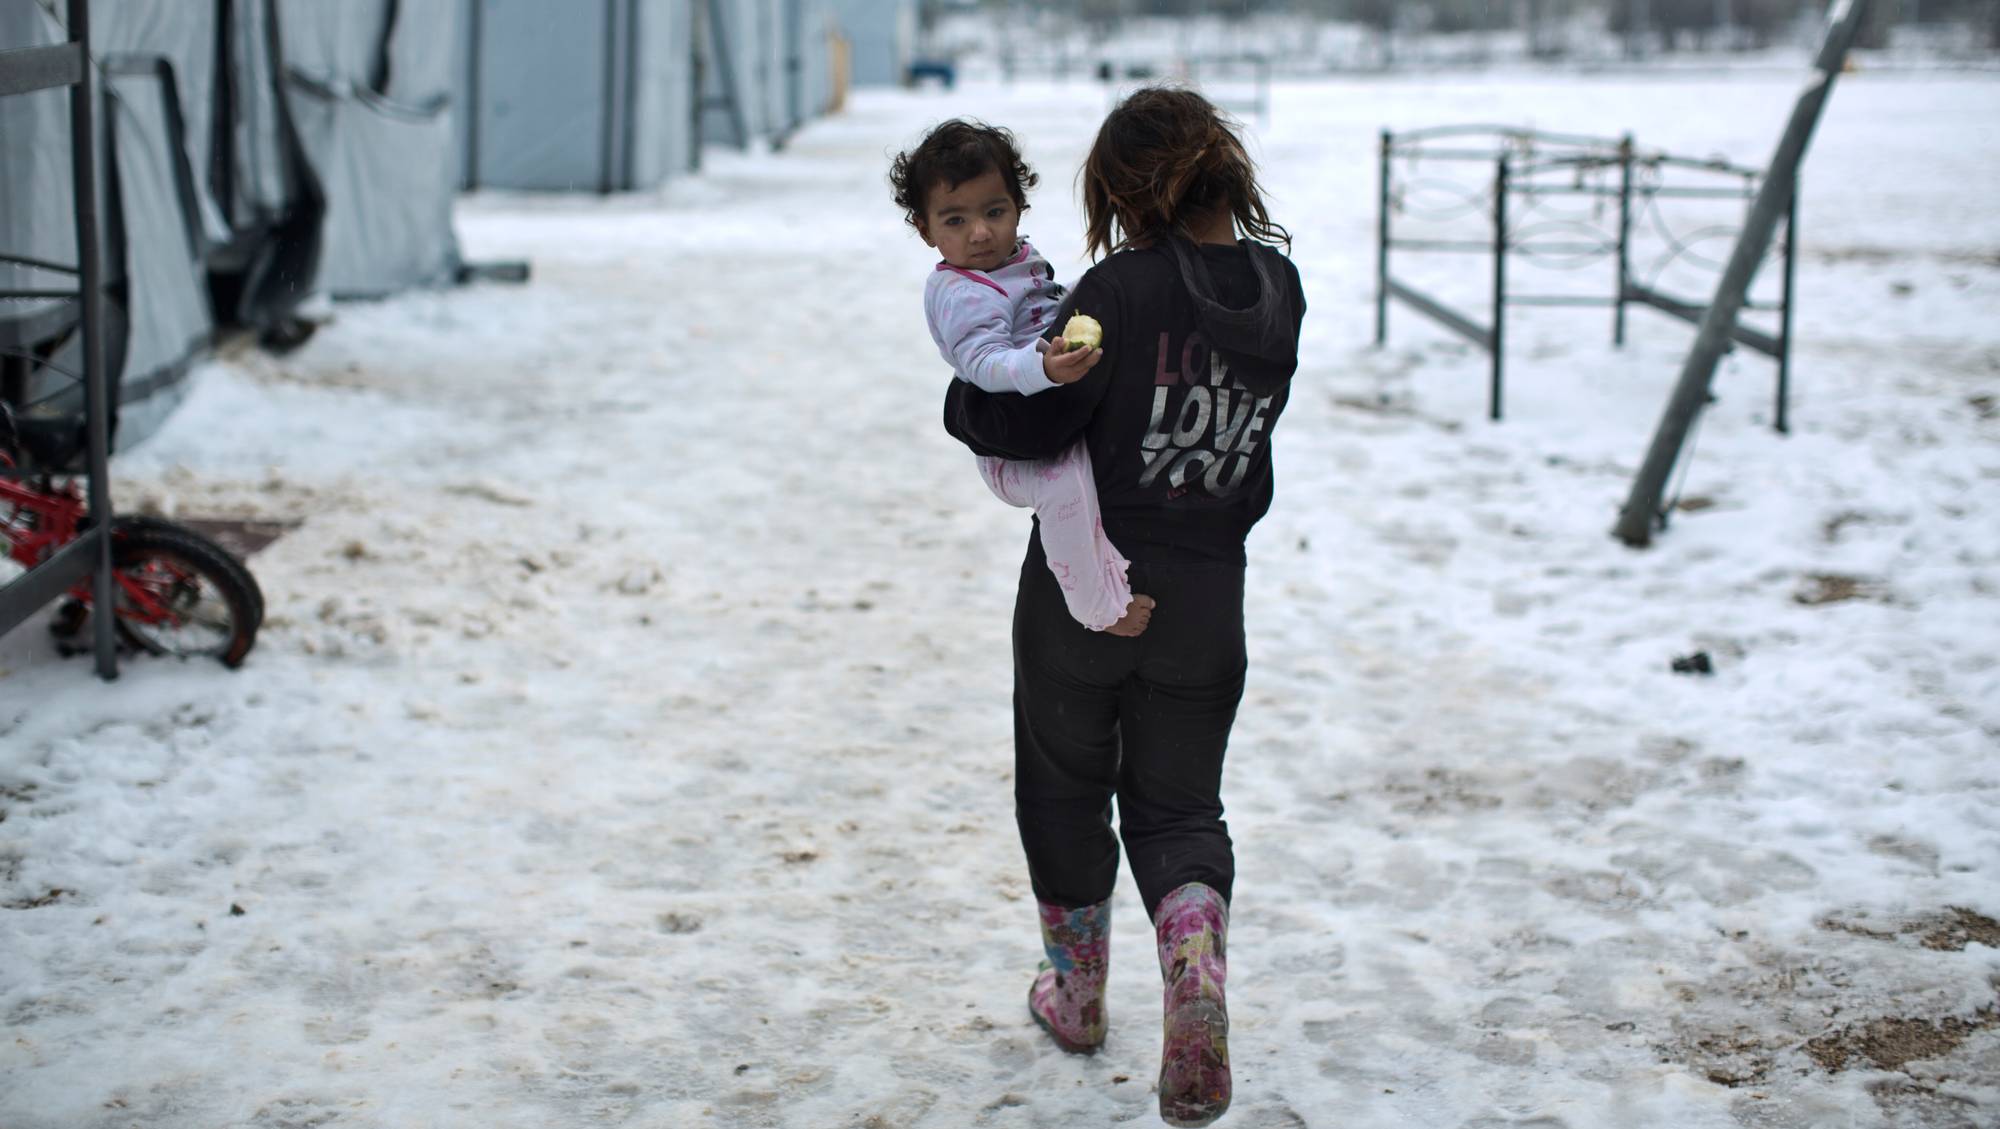 Колд дети. Syria children Winter. Маленькие дети беженцы. Сирийские дети учатся на улице зимой. Ролик о мирной жизни детей.